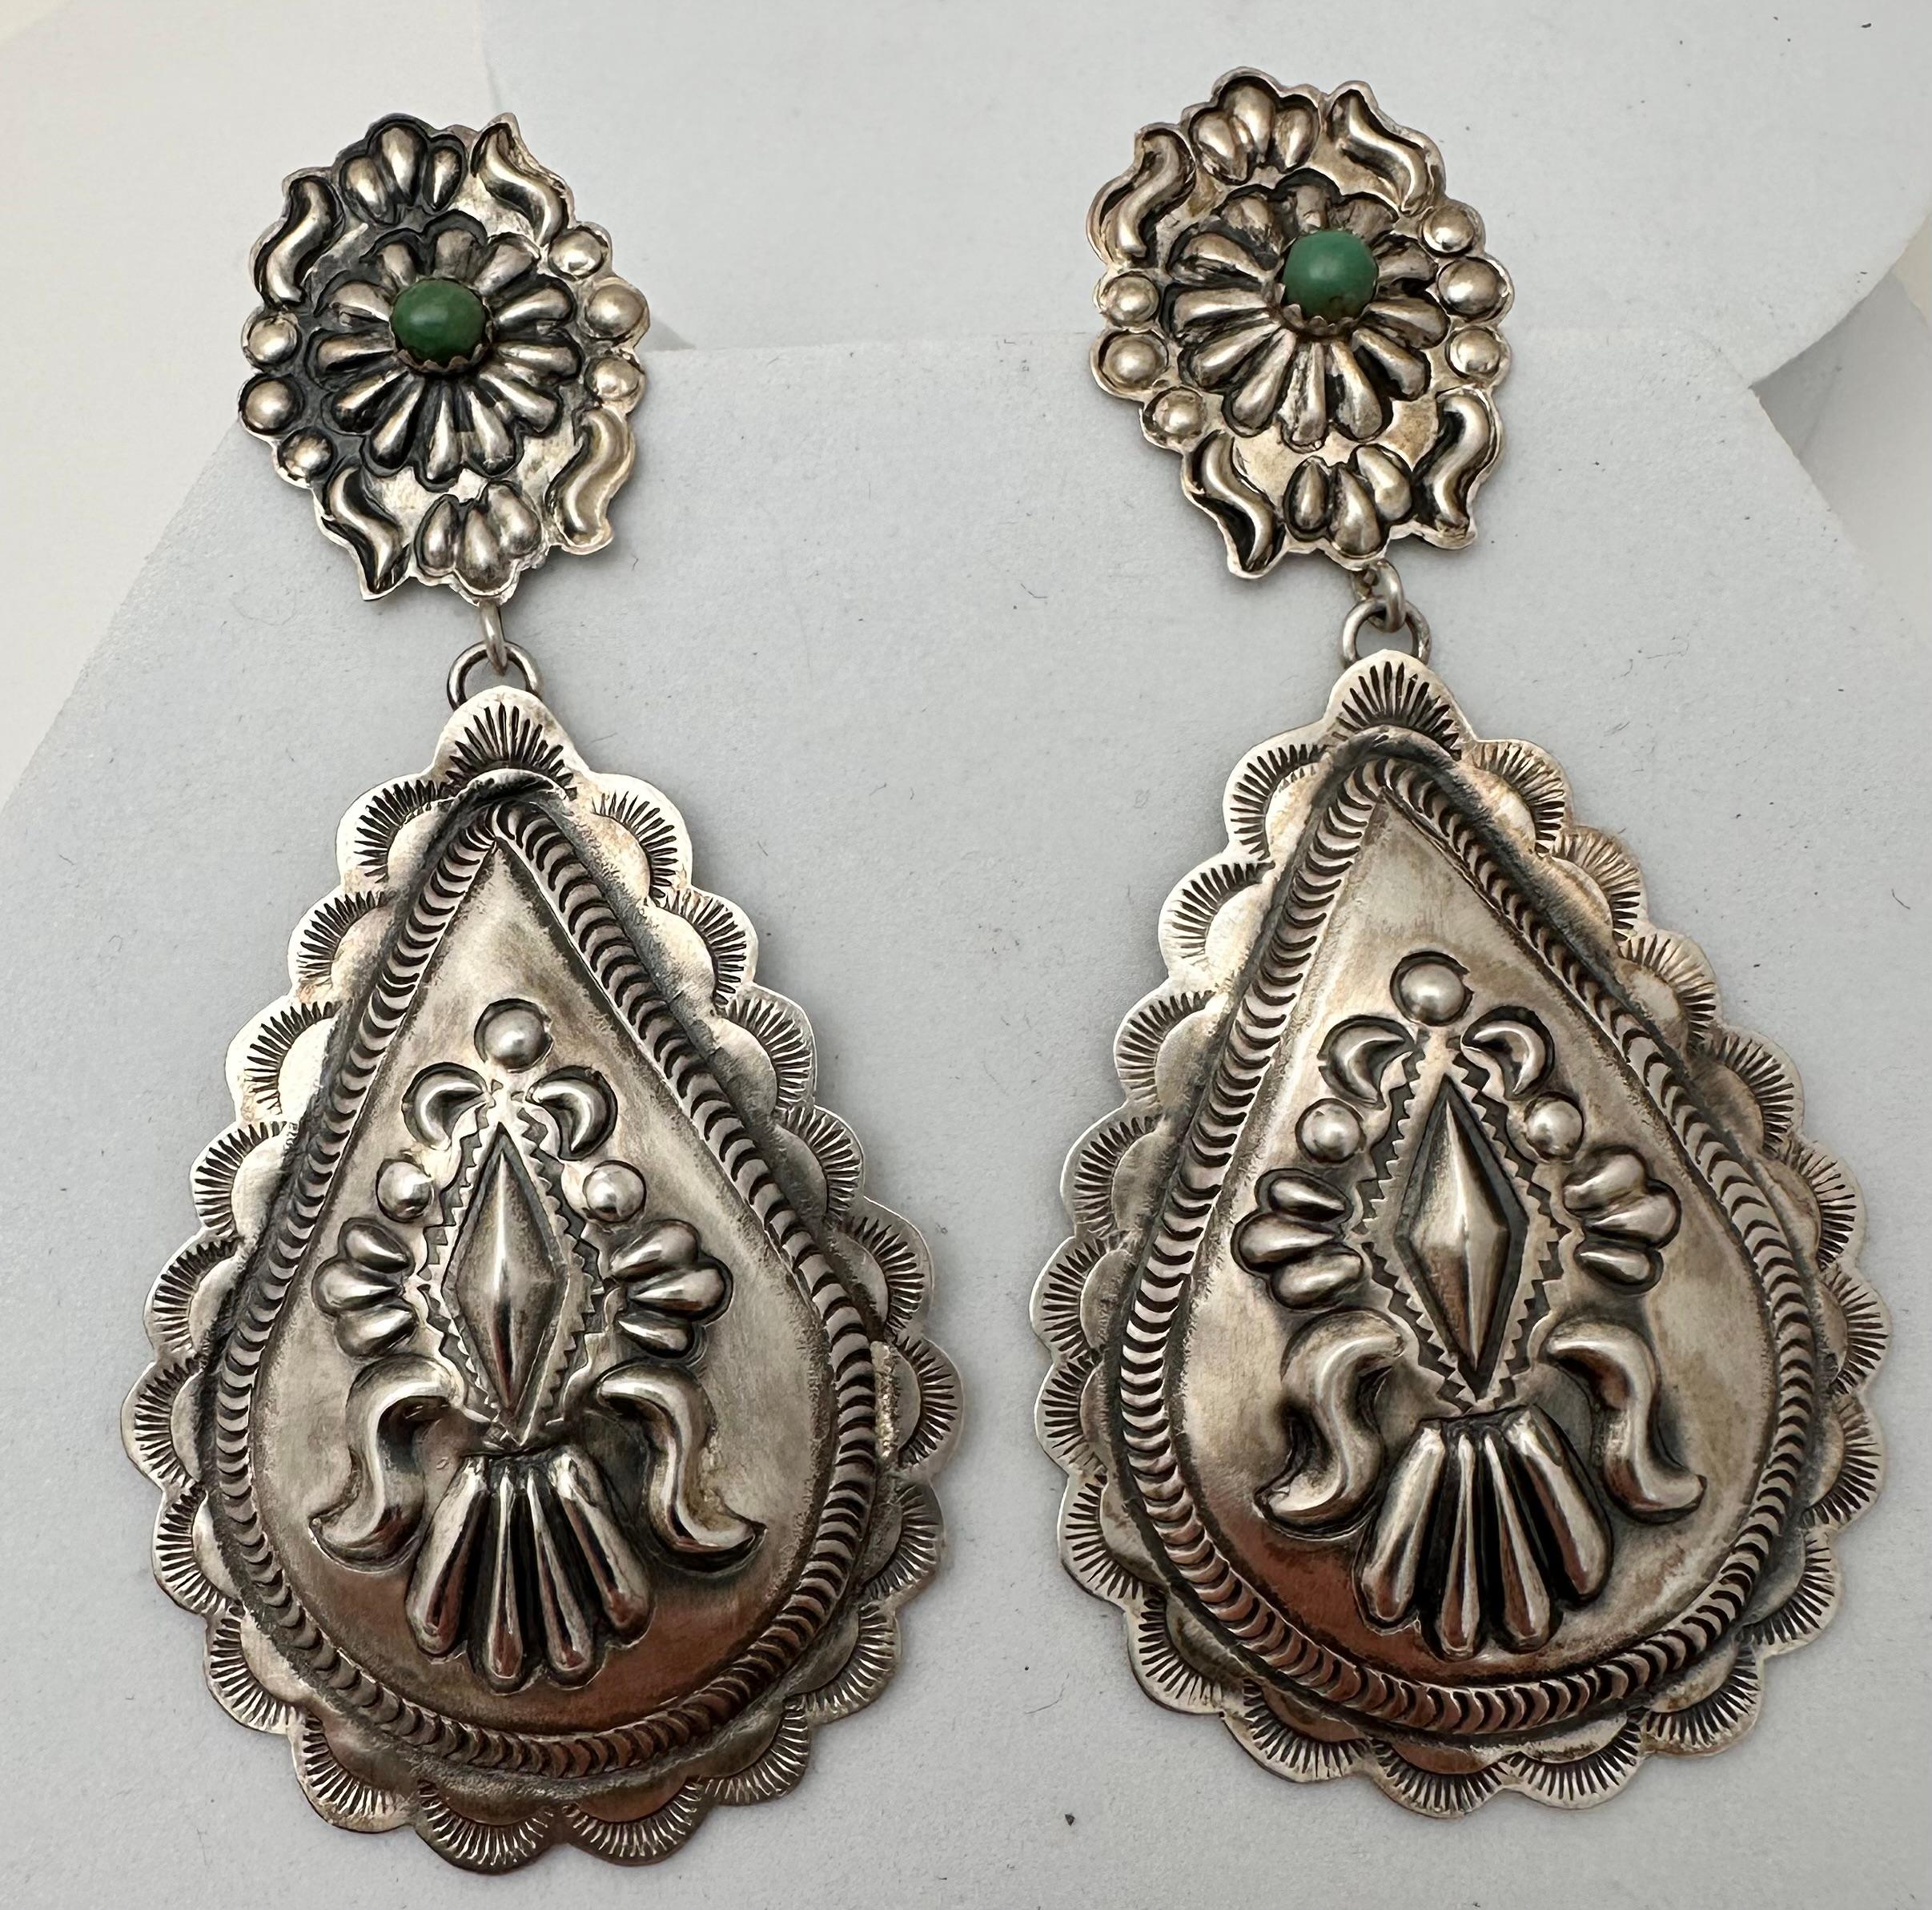 Navajo Sterling Silber .925 Repousse mit 4mm runden grünen Türkis in birnenförmigen Ohrringe baumeln gesetzt 
Ungefähr 1,5